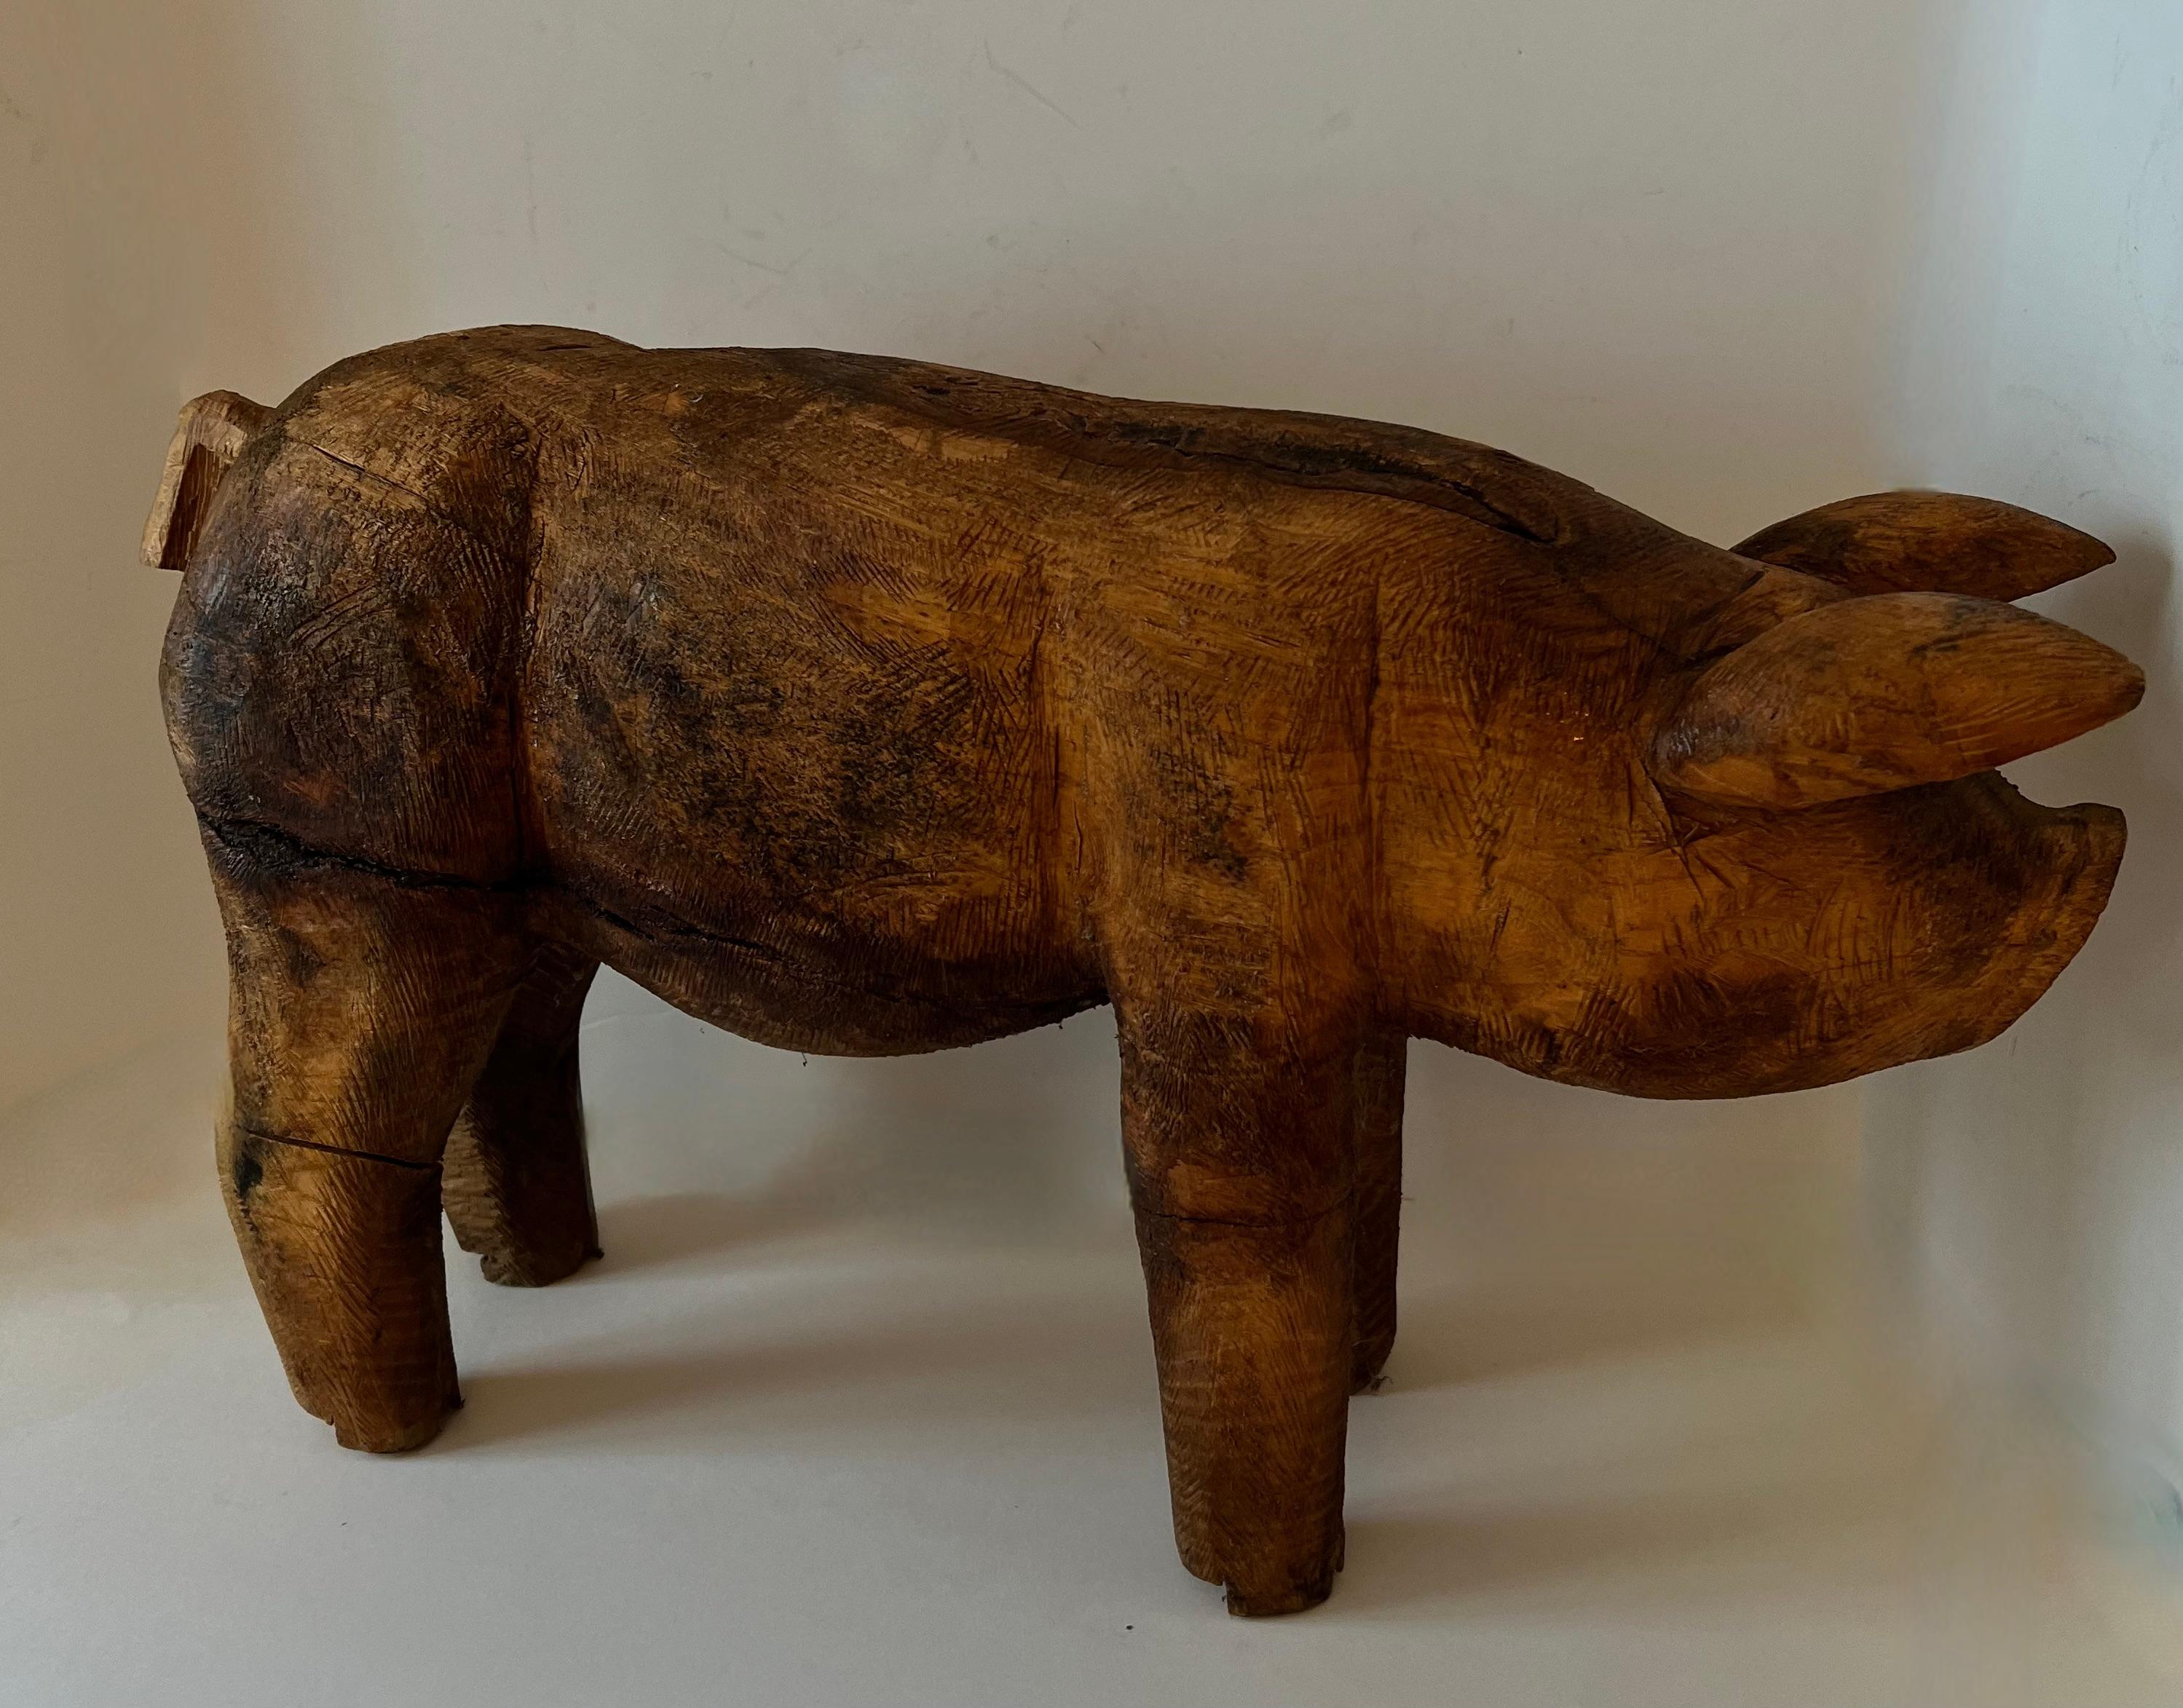 Hand-Carved Hand Carved Folk Art Standing Pig For Sale